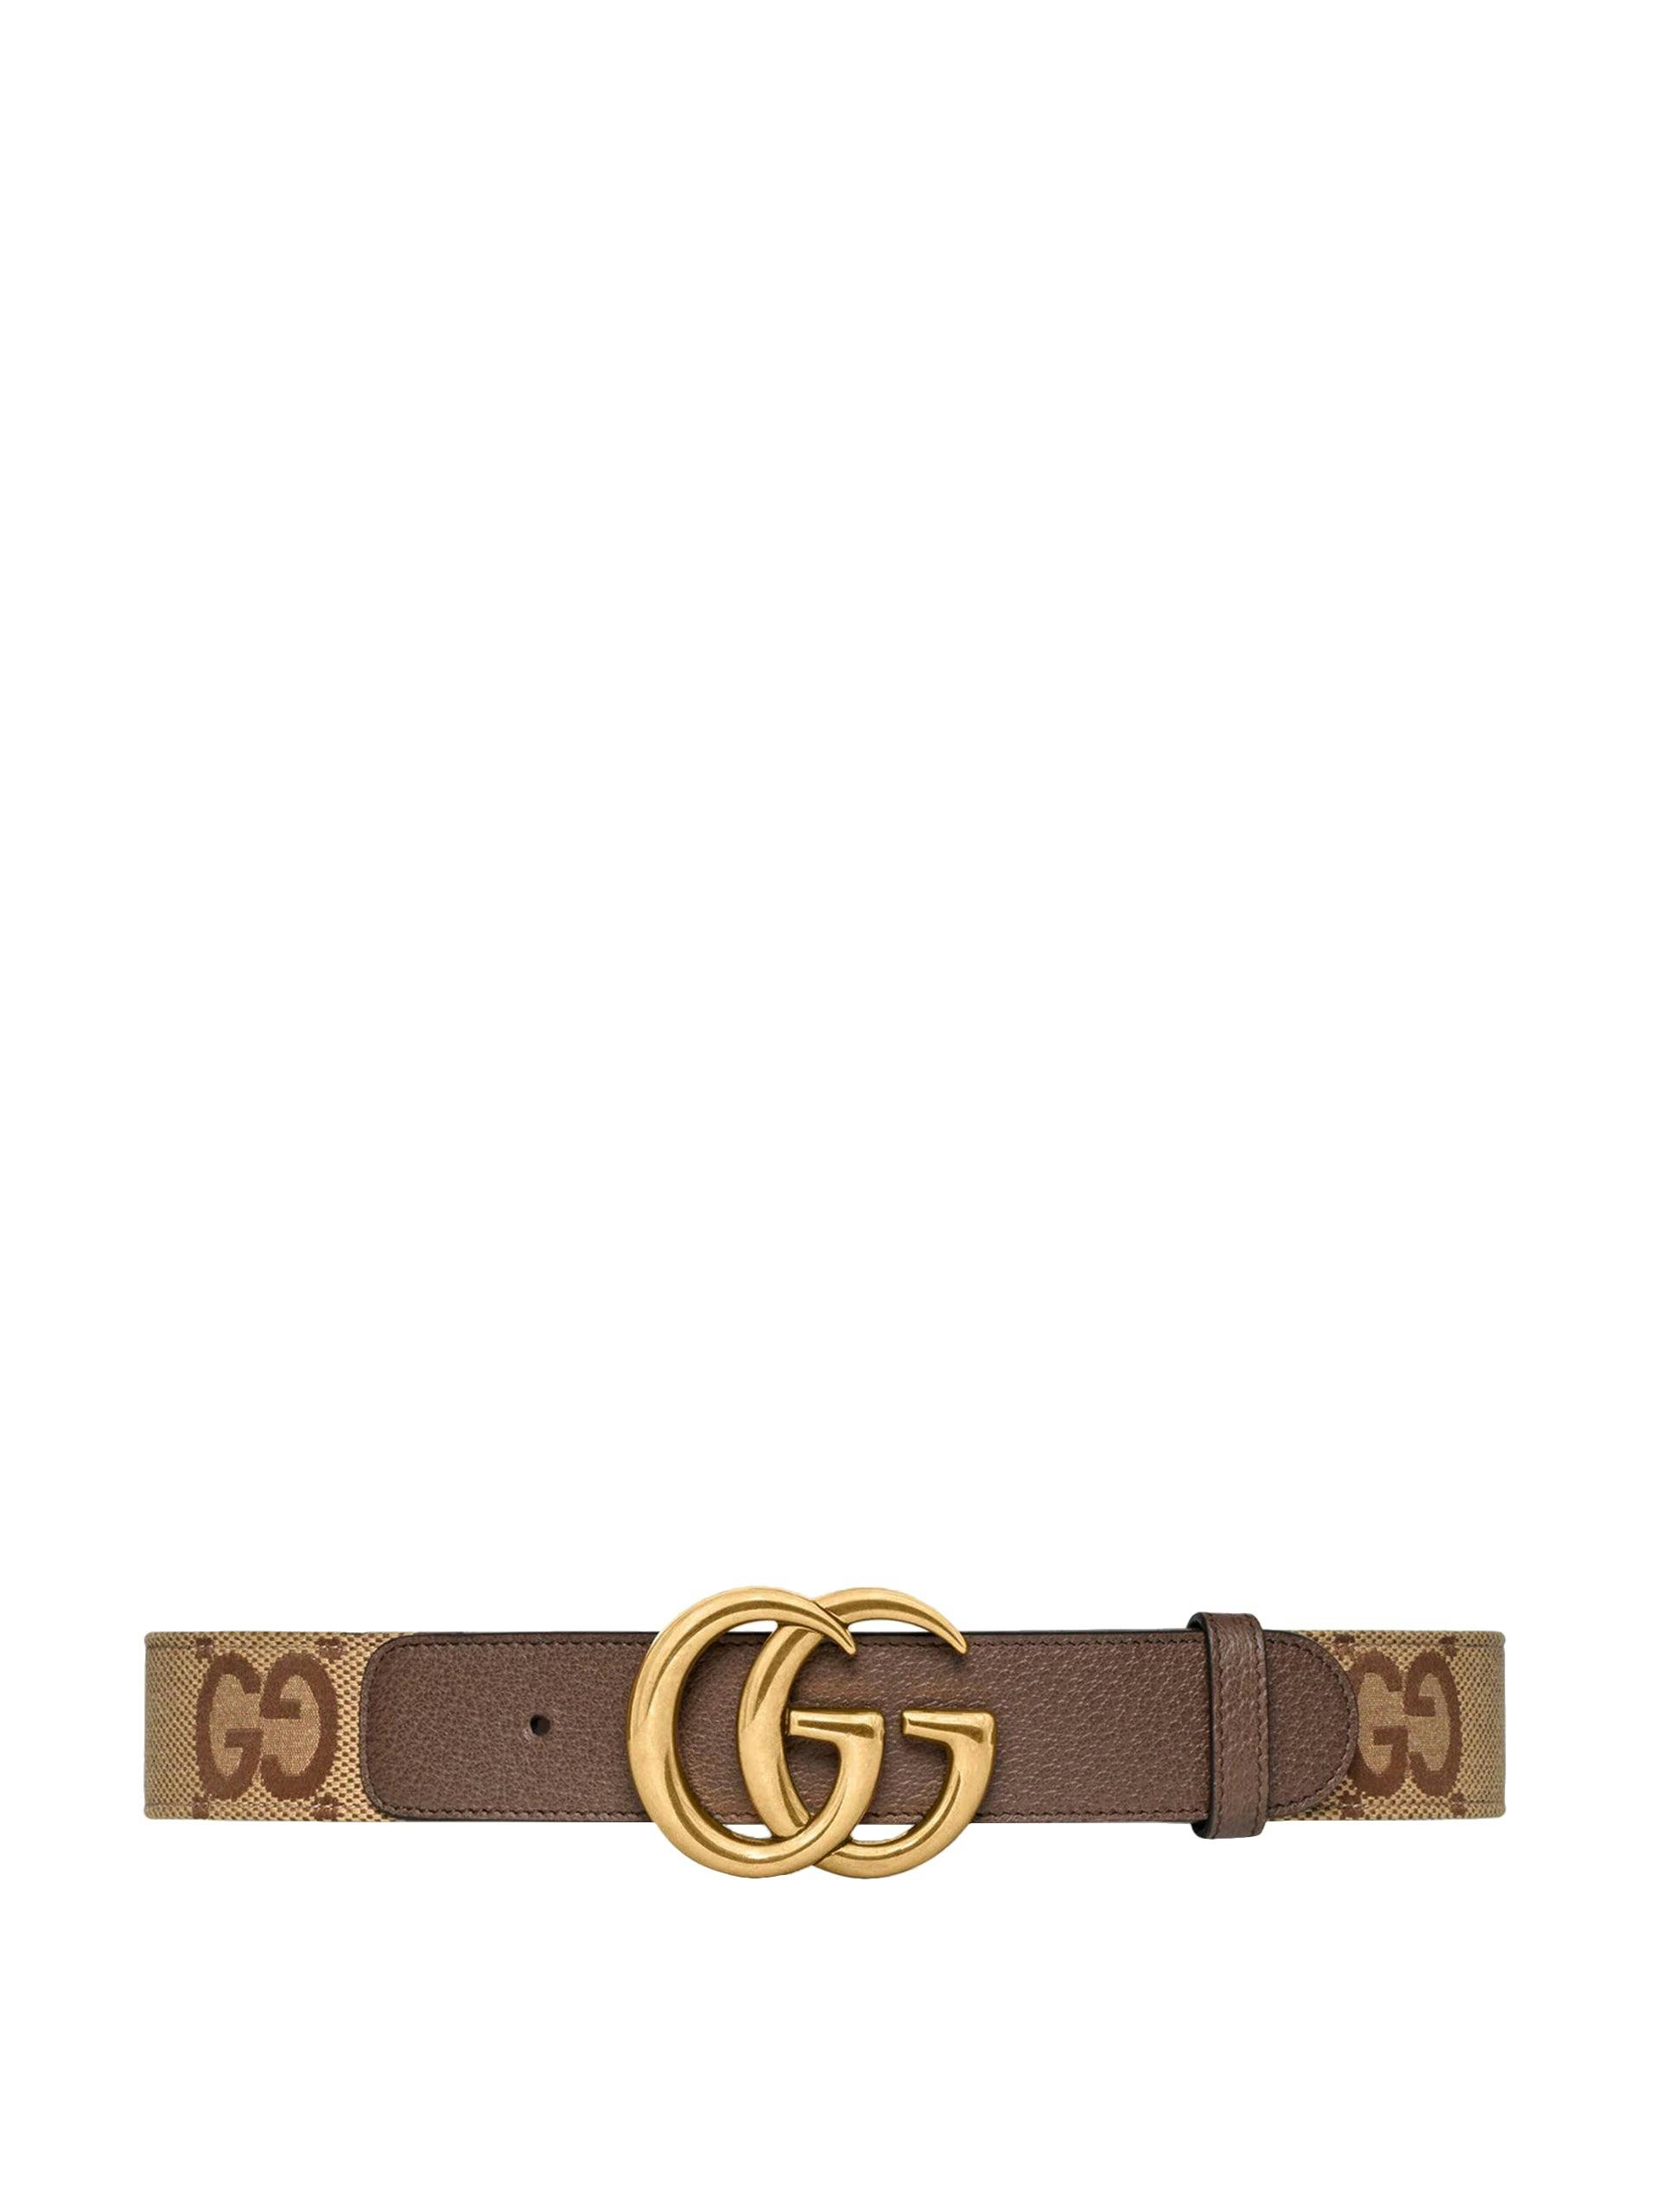 Jumbo GG Marmont wide belt